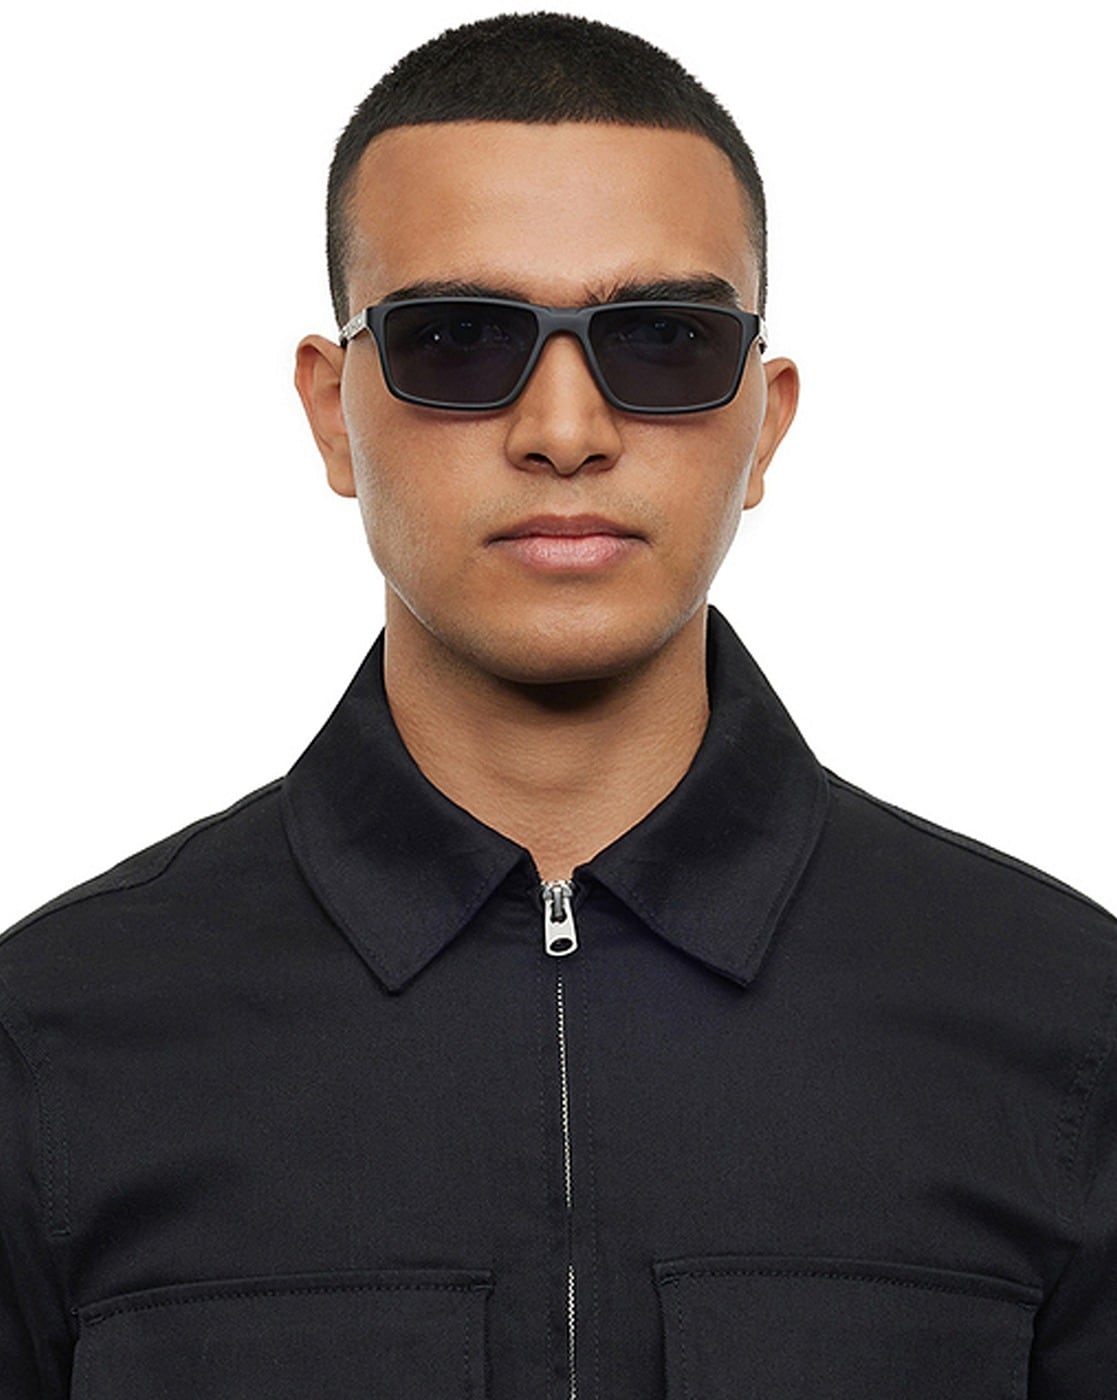 Buy Aviator Sunglasses for Men from Lenskart.com?